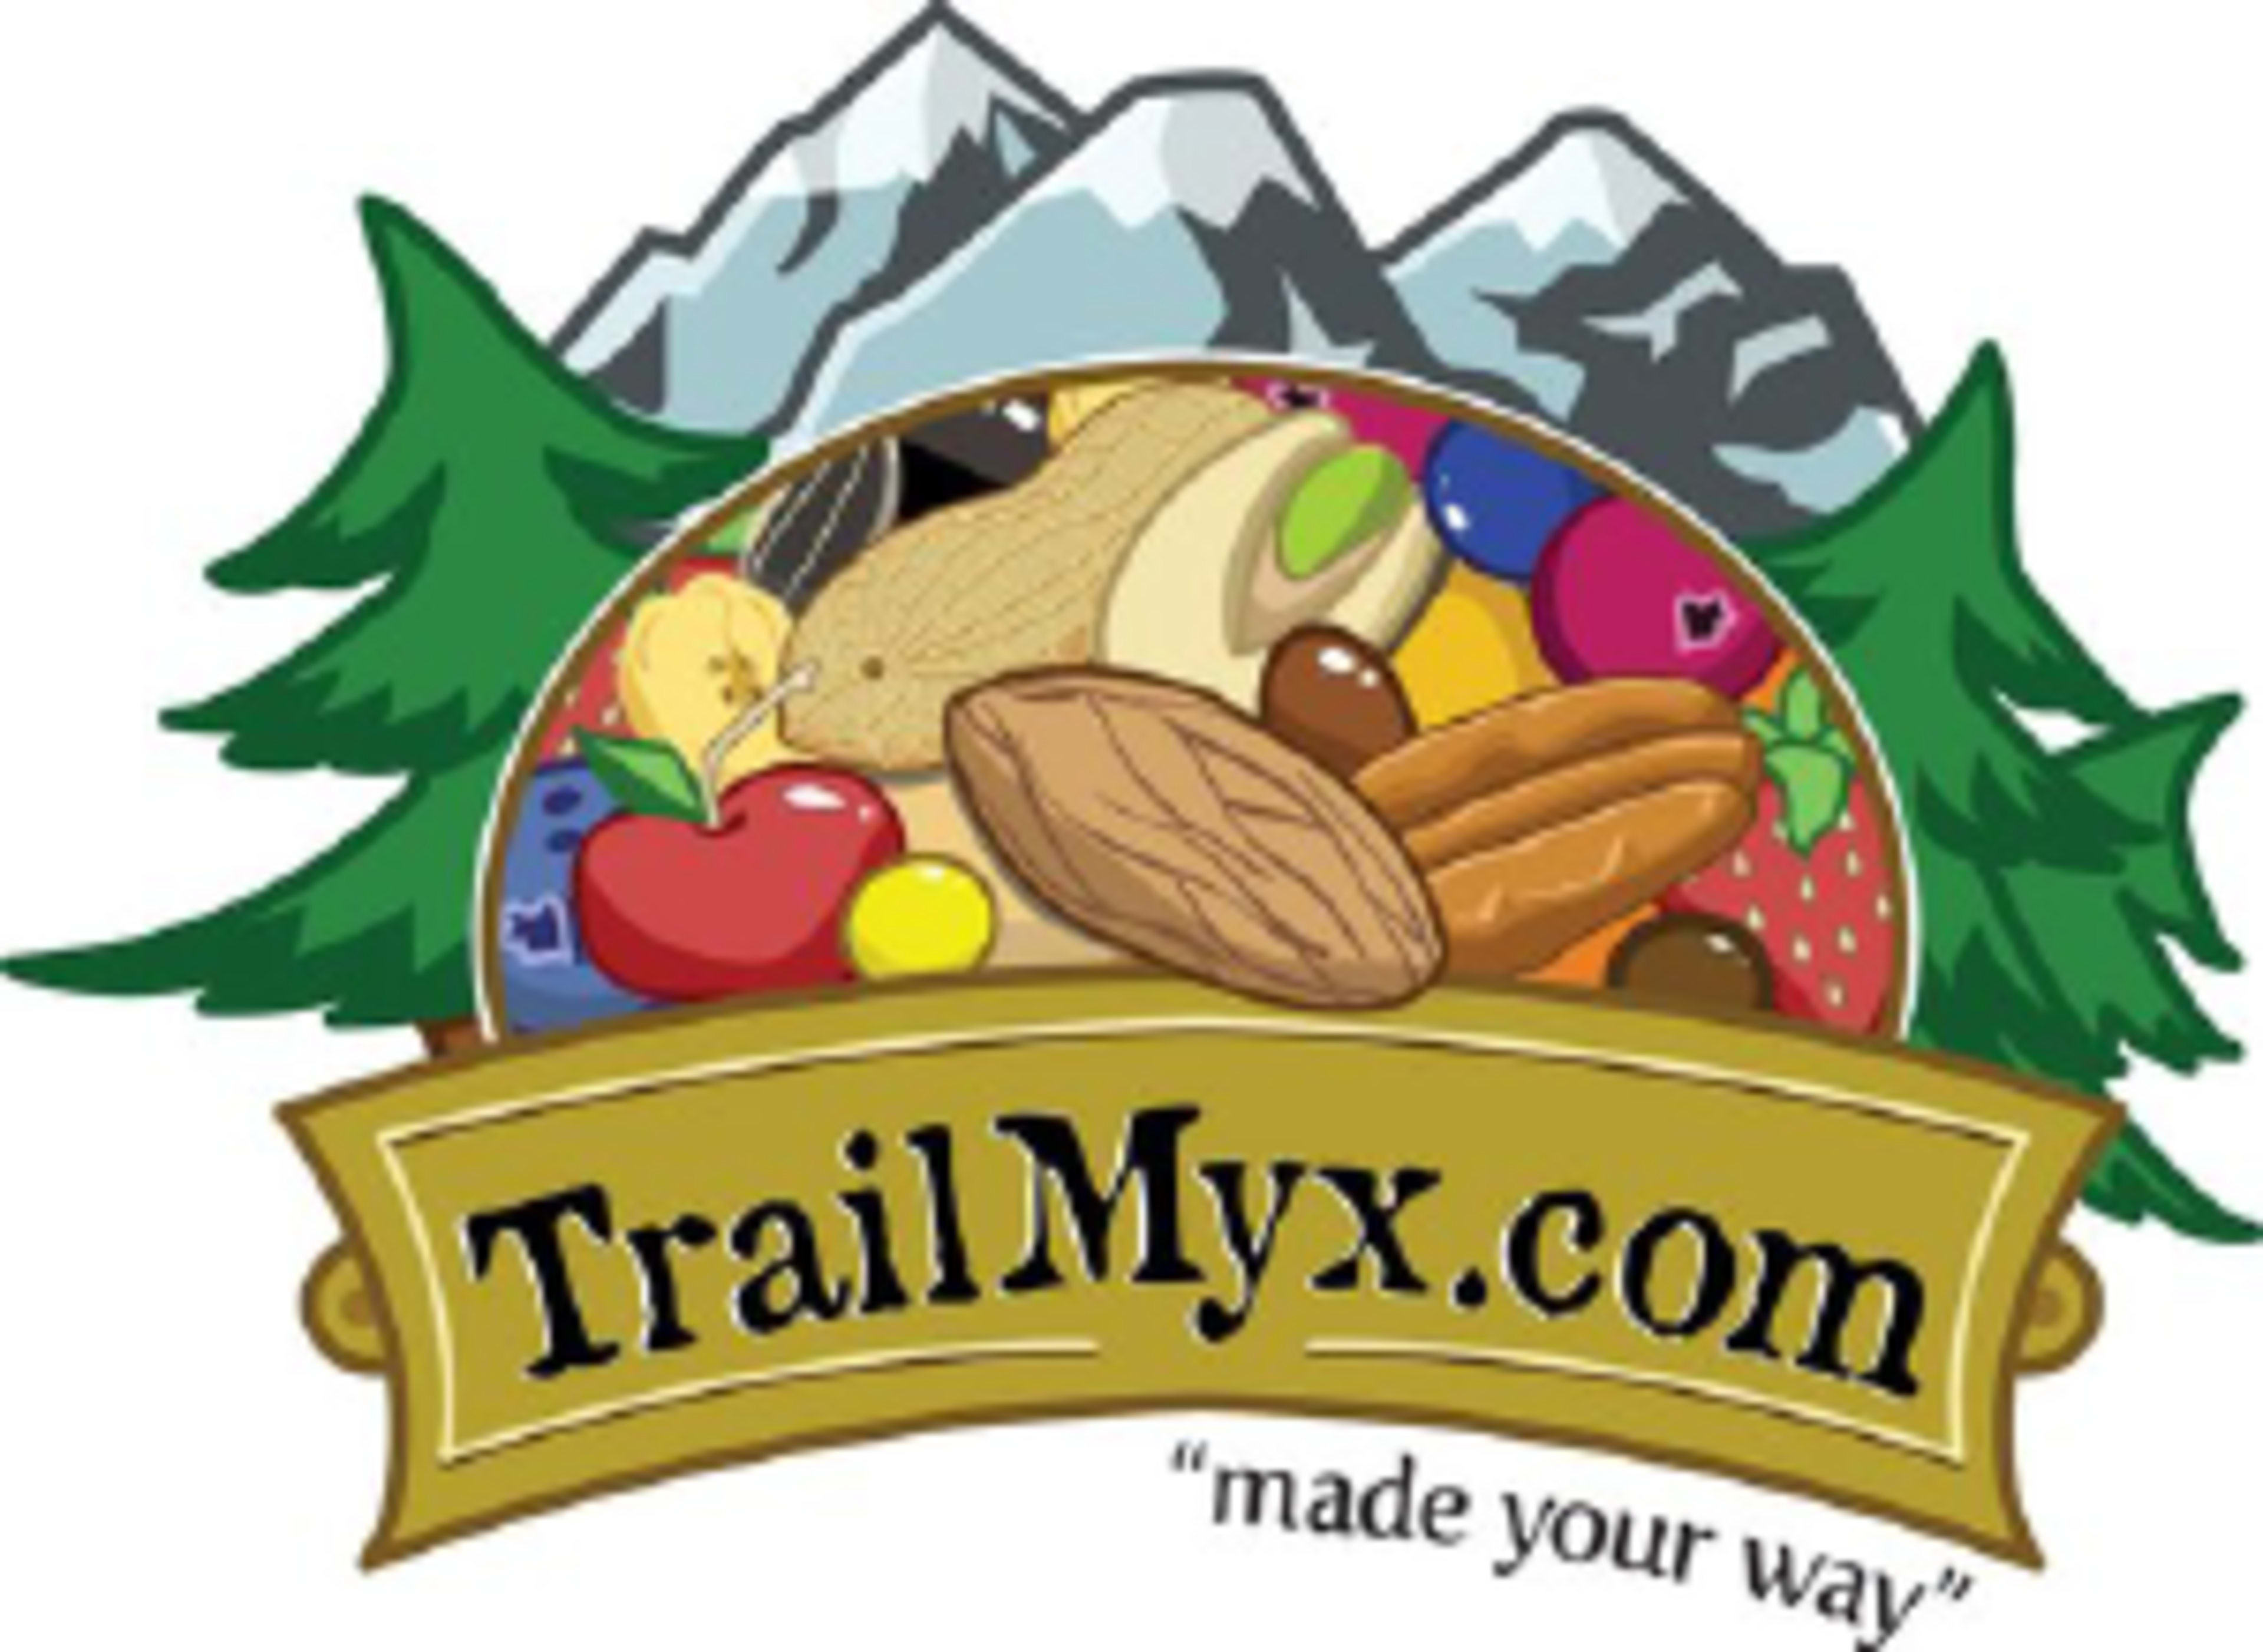 TrailMyx.com Code